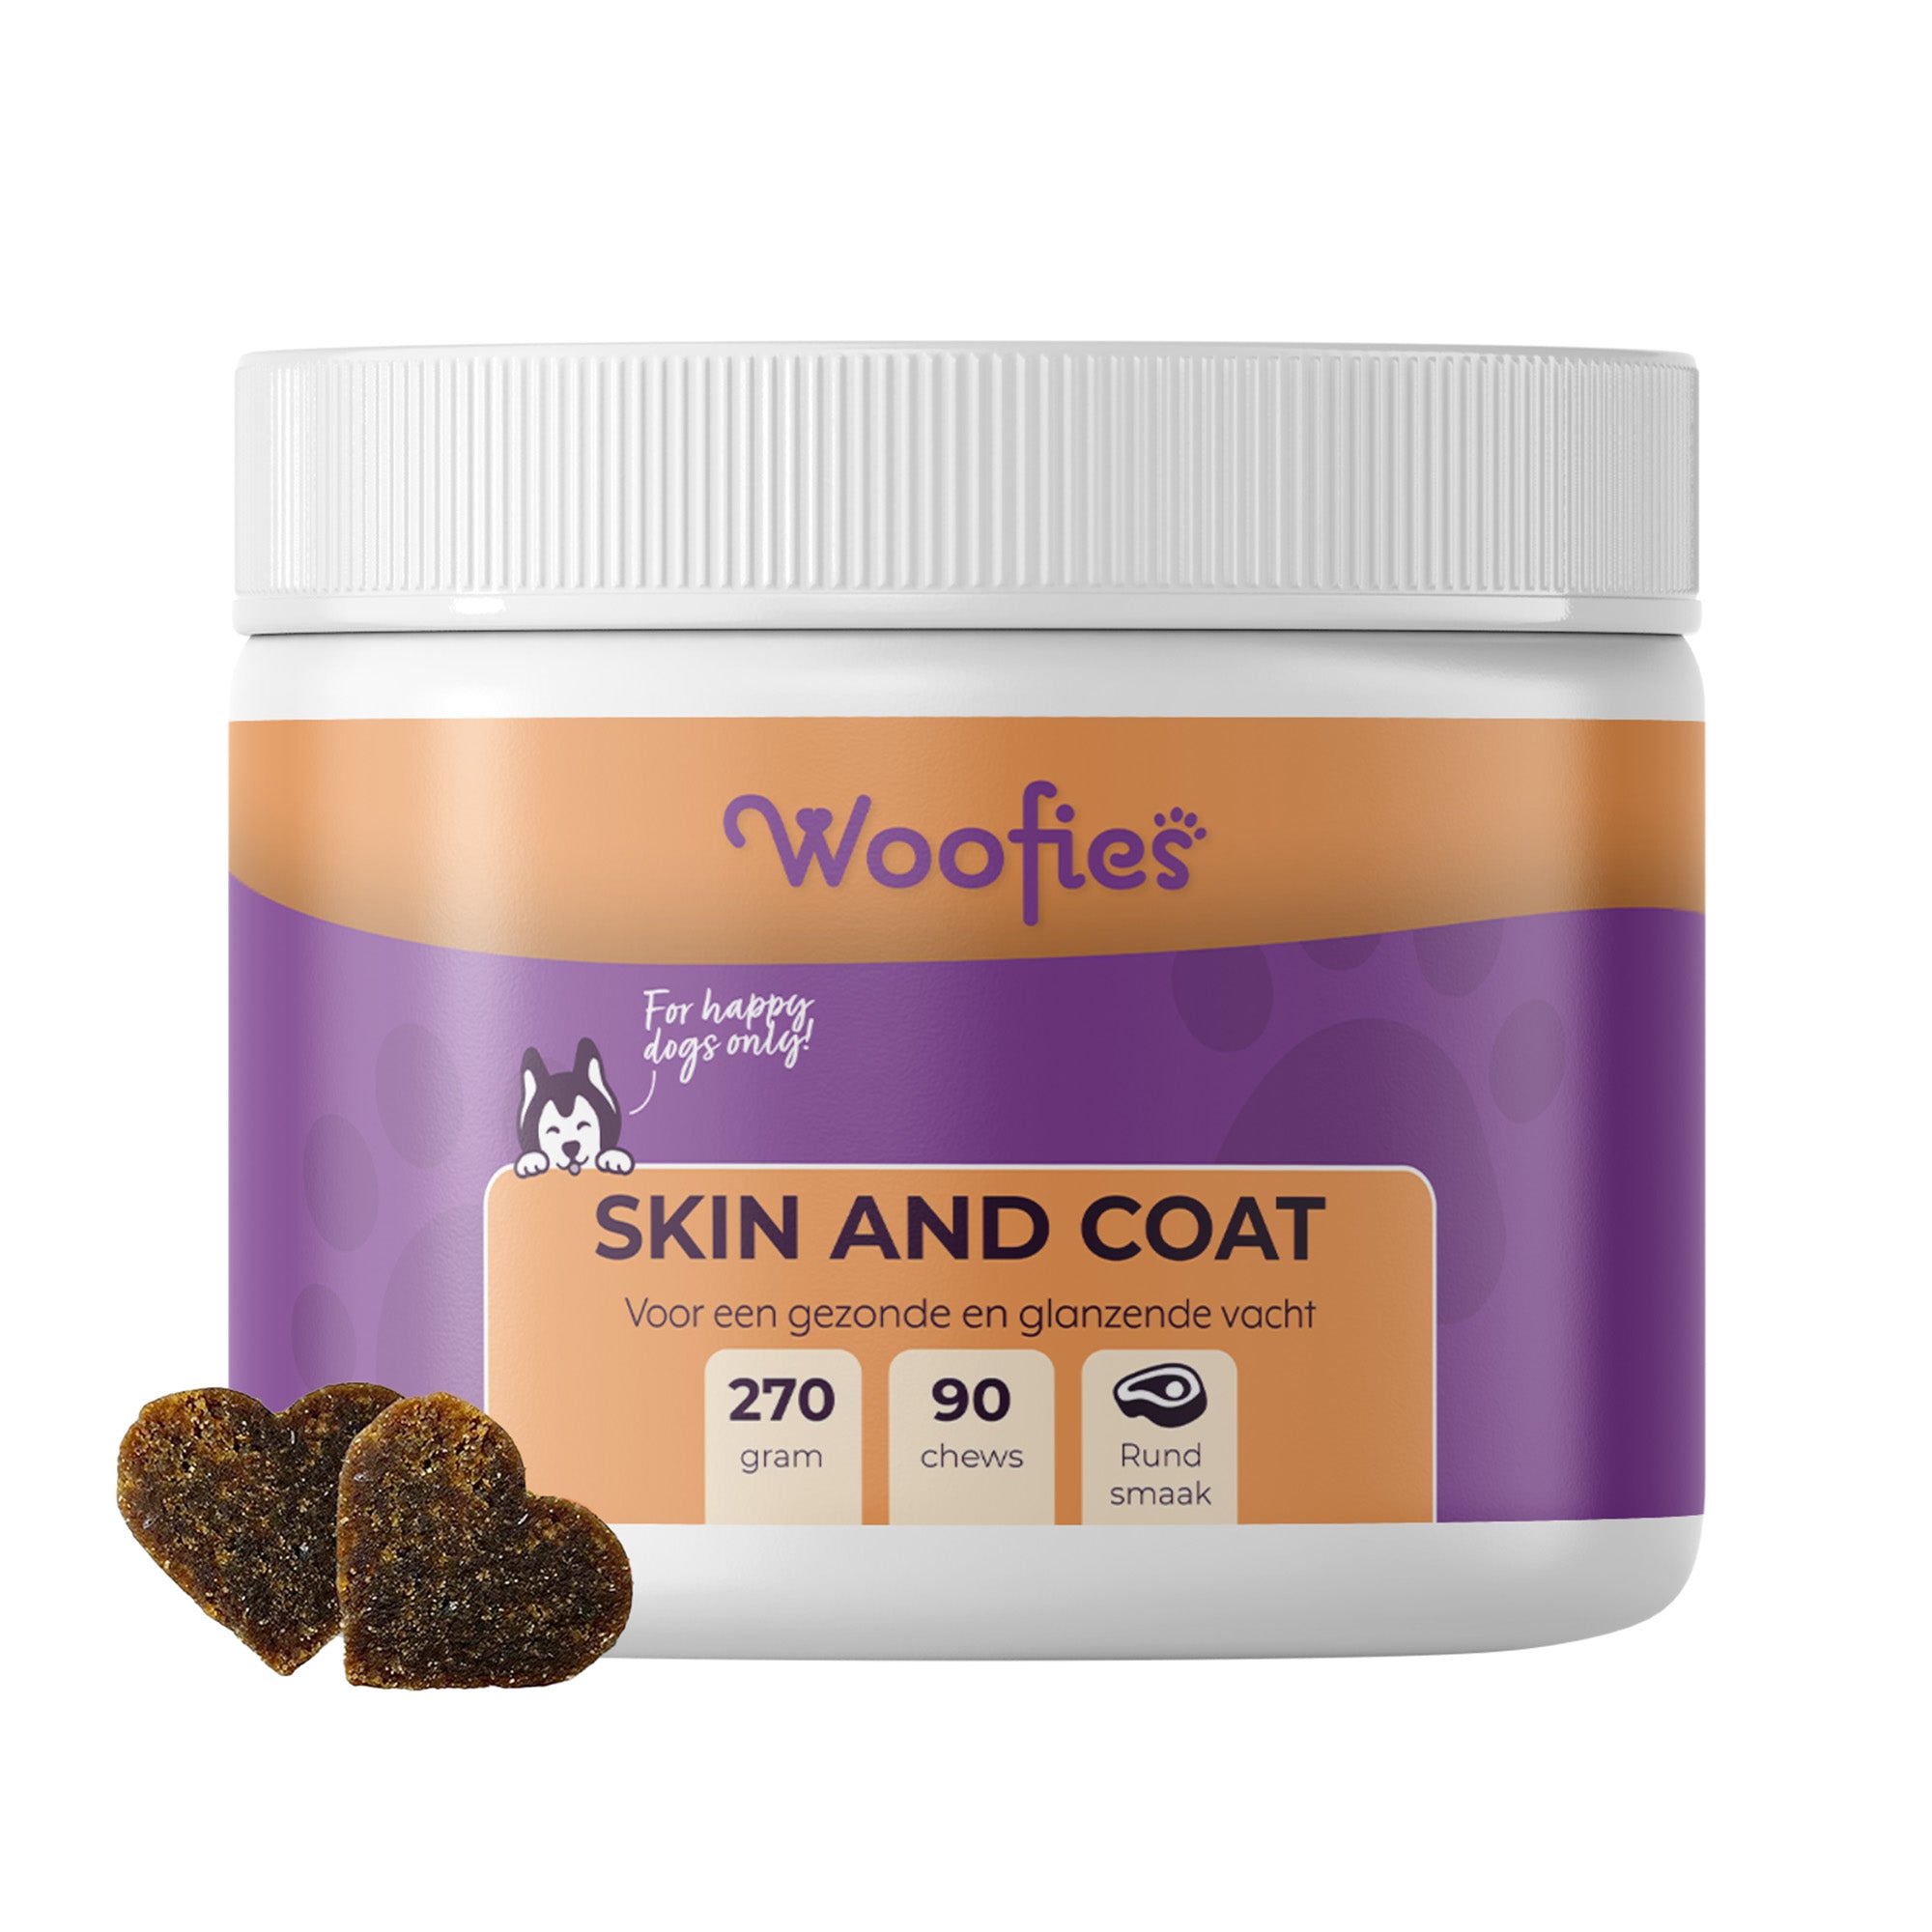 "Woofies Skin & Coat Supplement Chews voor gezonde huid en glanzende vacht."